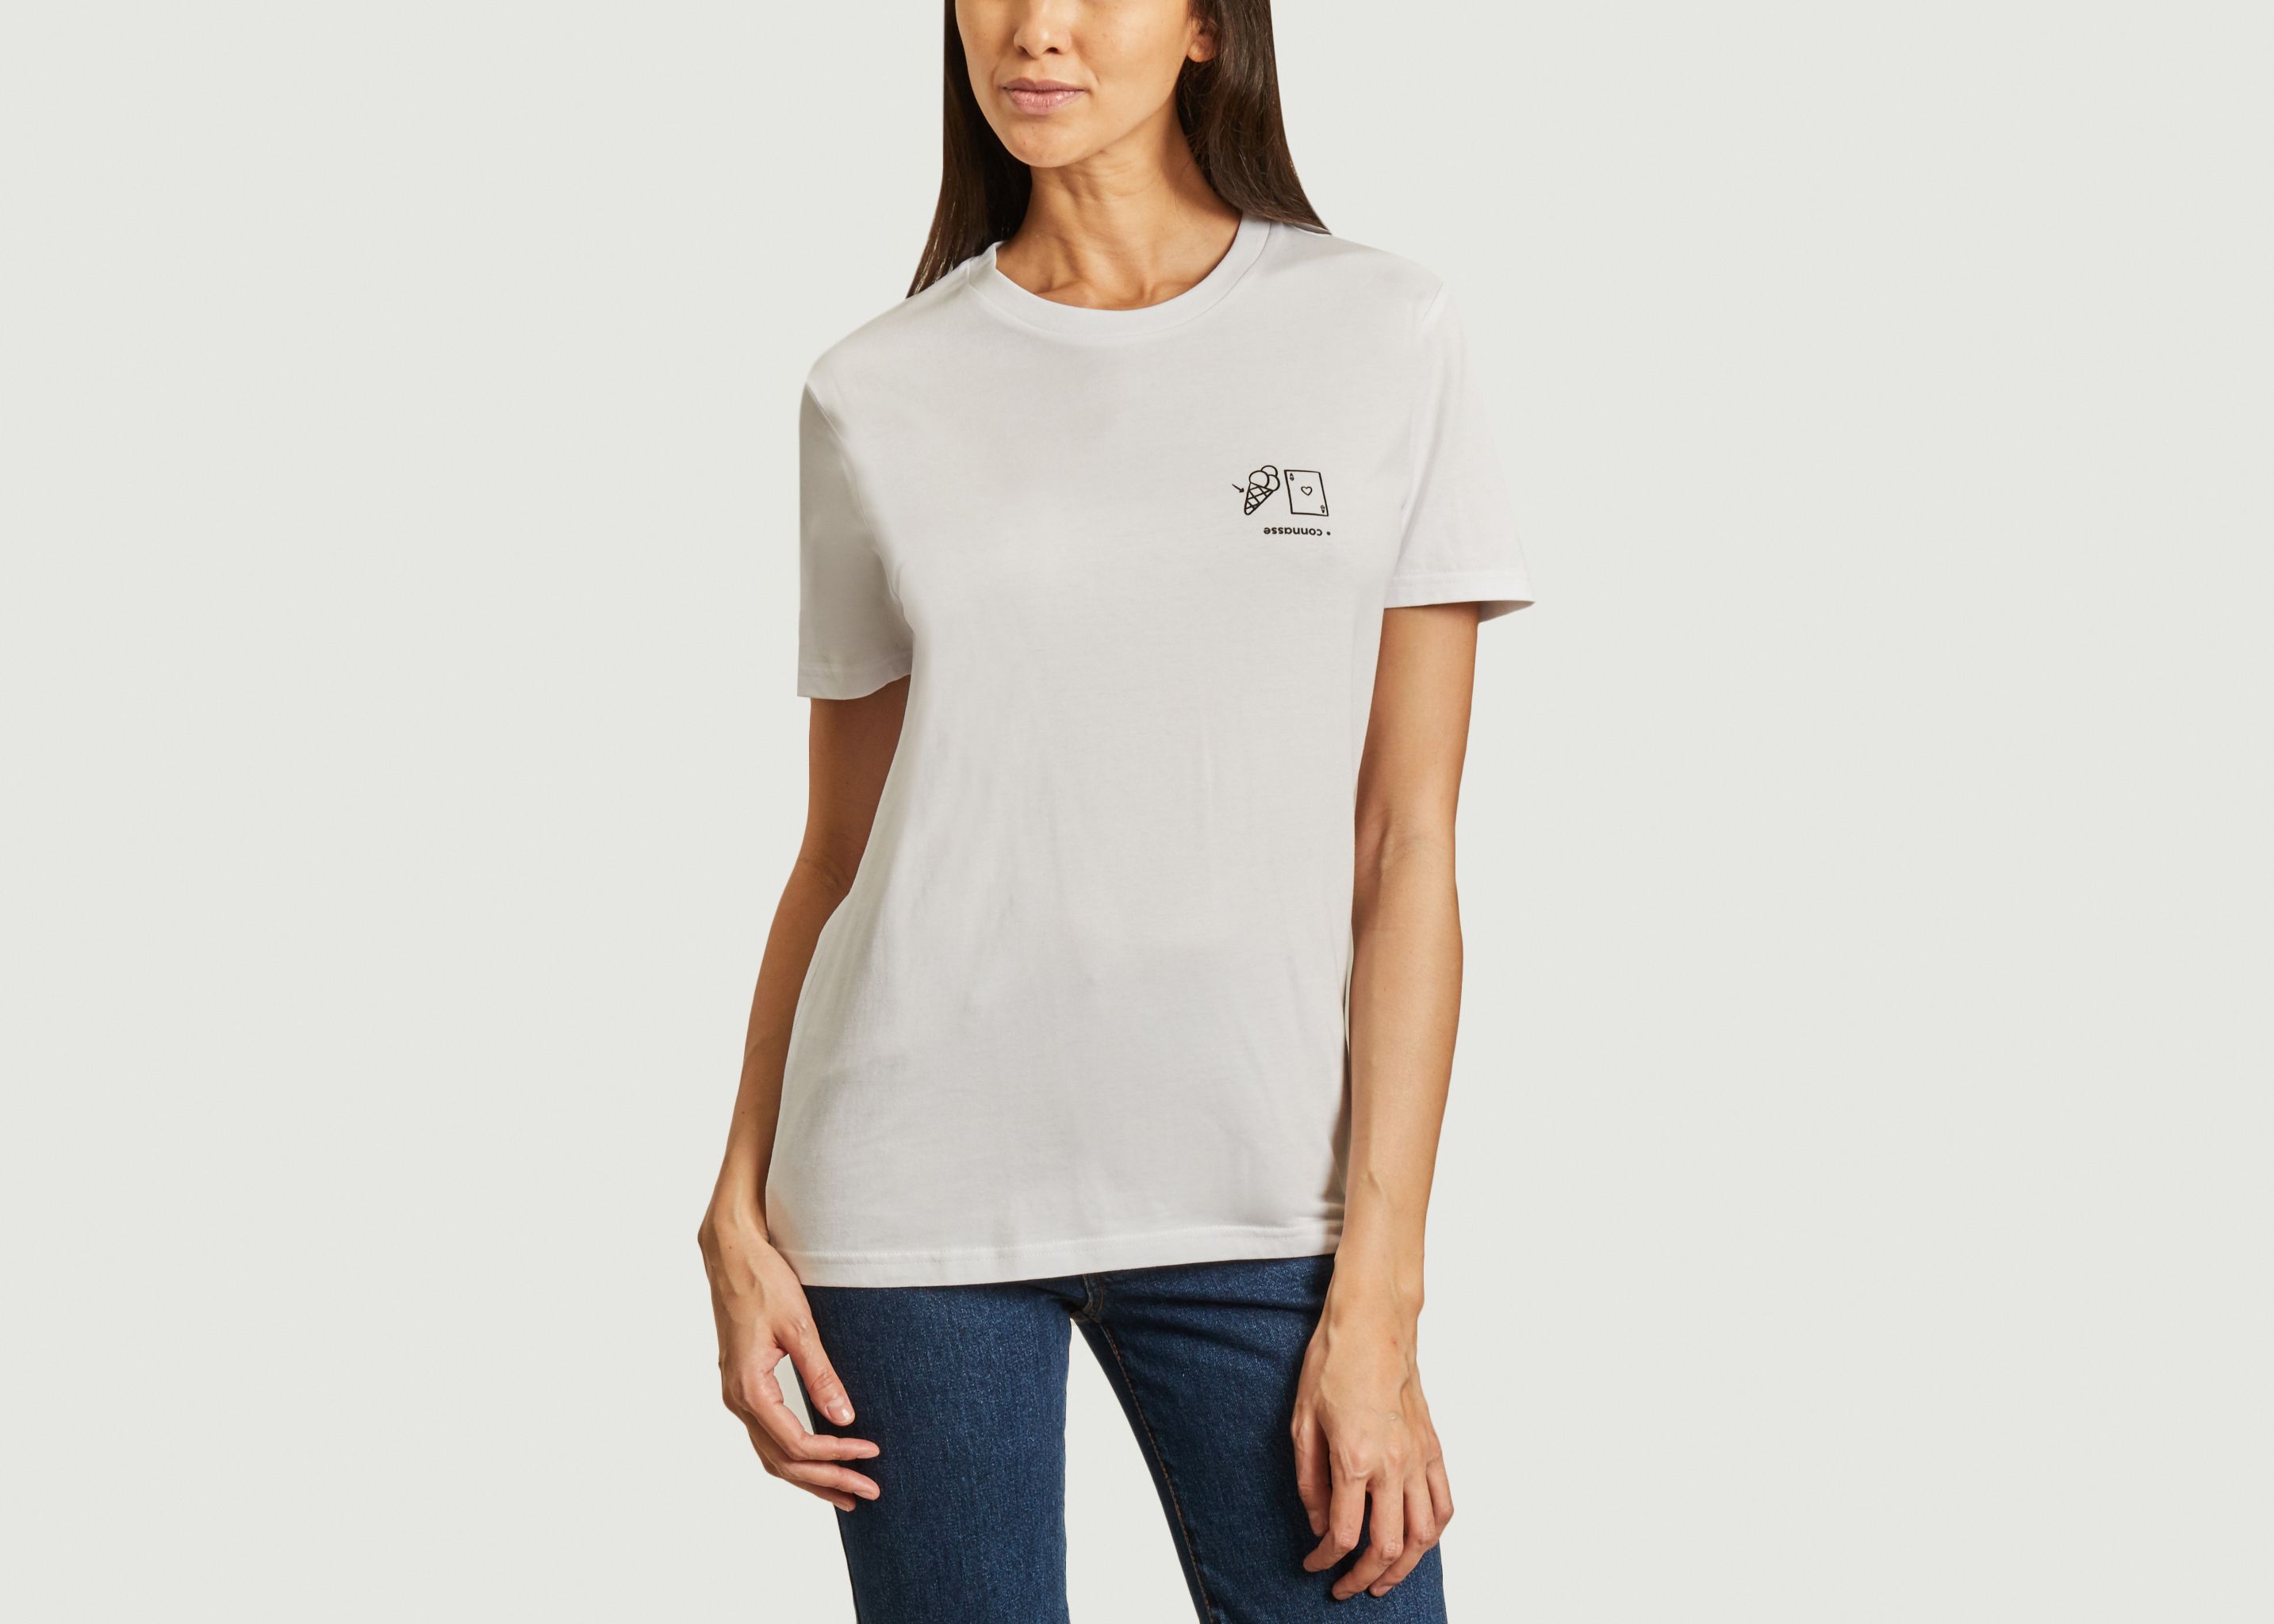 Rébus Connasse T-shirt - Felicie Aussi